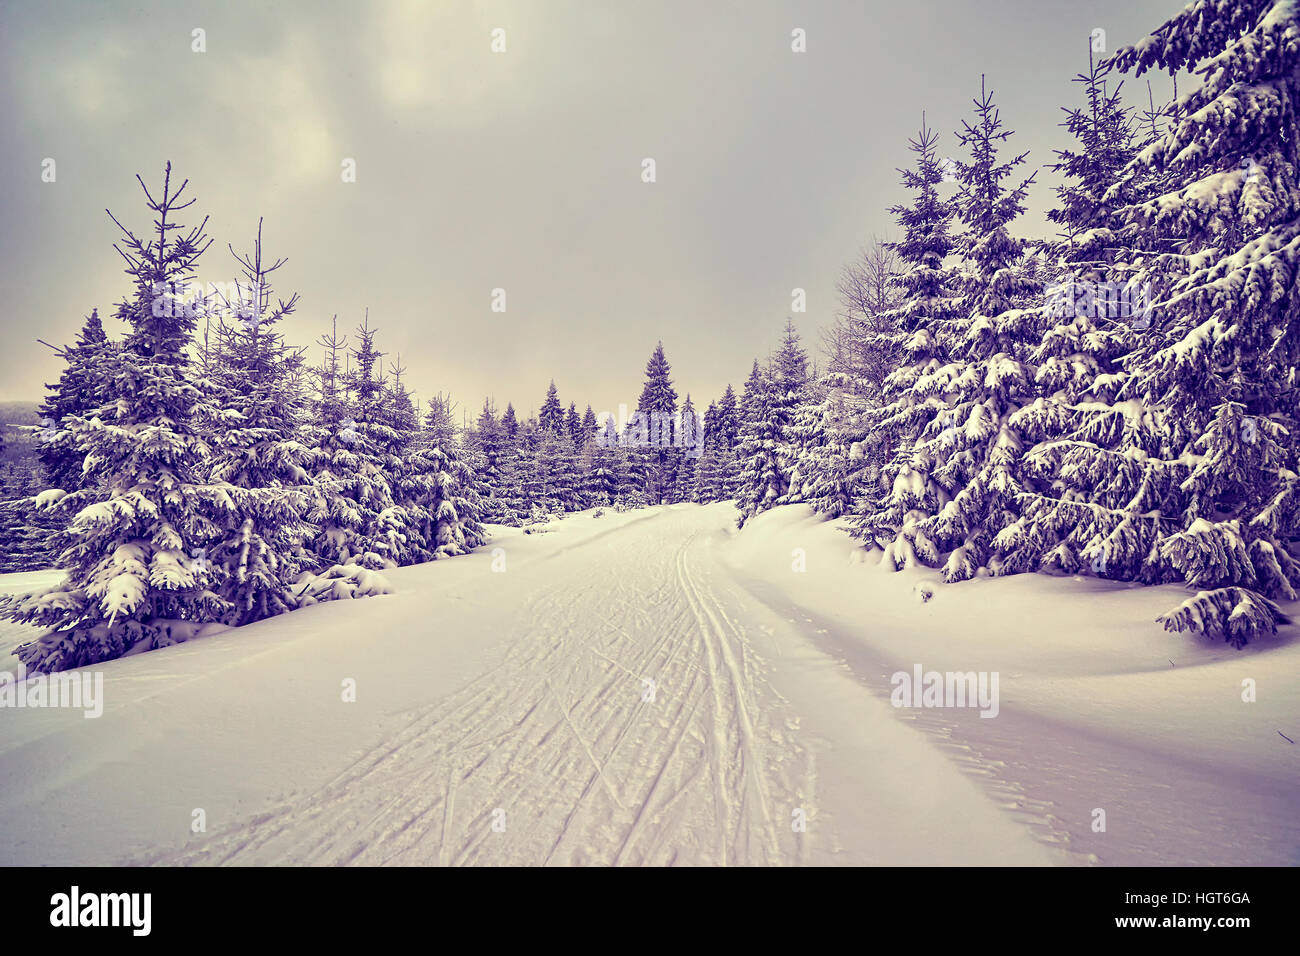 Nei toni del viola paesaggio invernale con piste per lo sci di fondo. Foto Stock